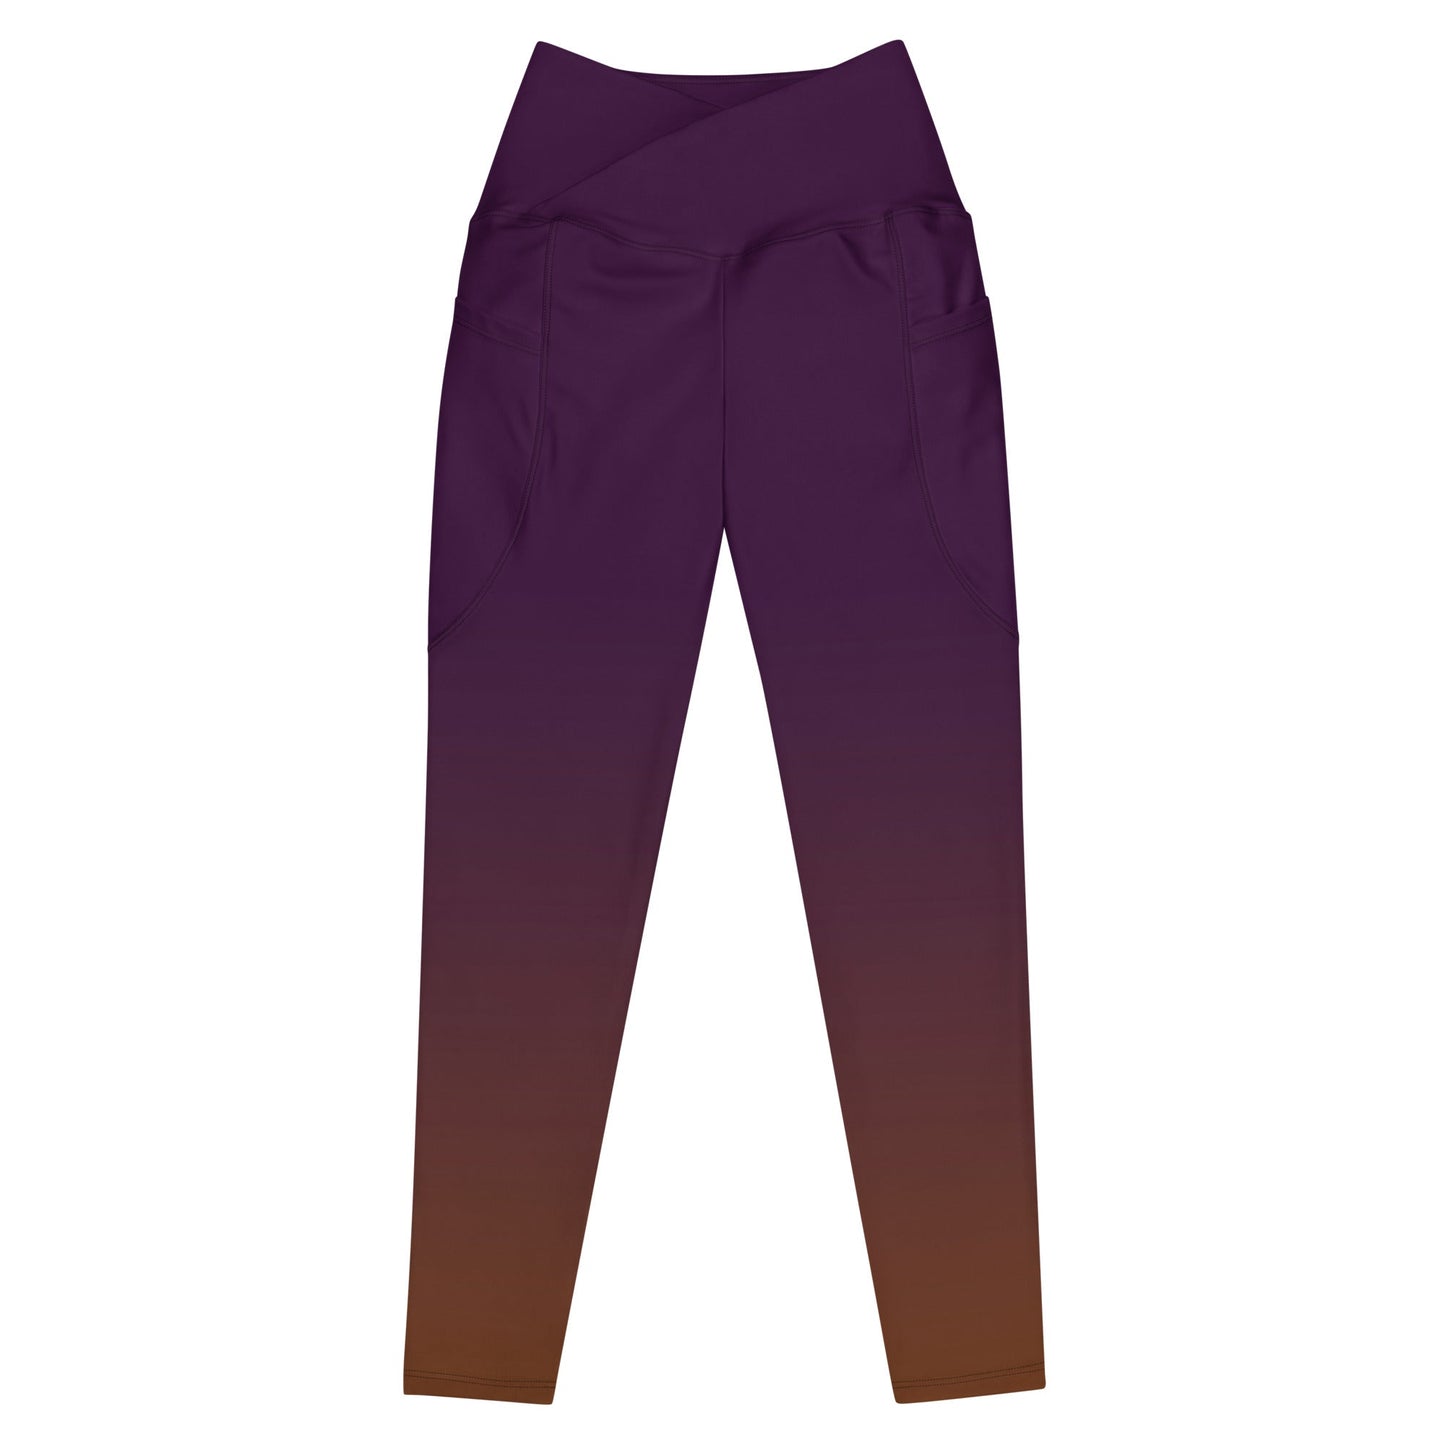 Amethyst Melt Crossover leggings with pockets - Fox & Joy